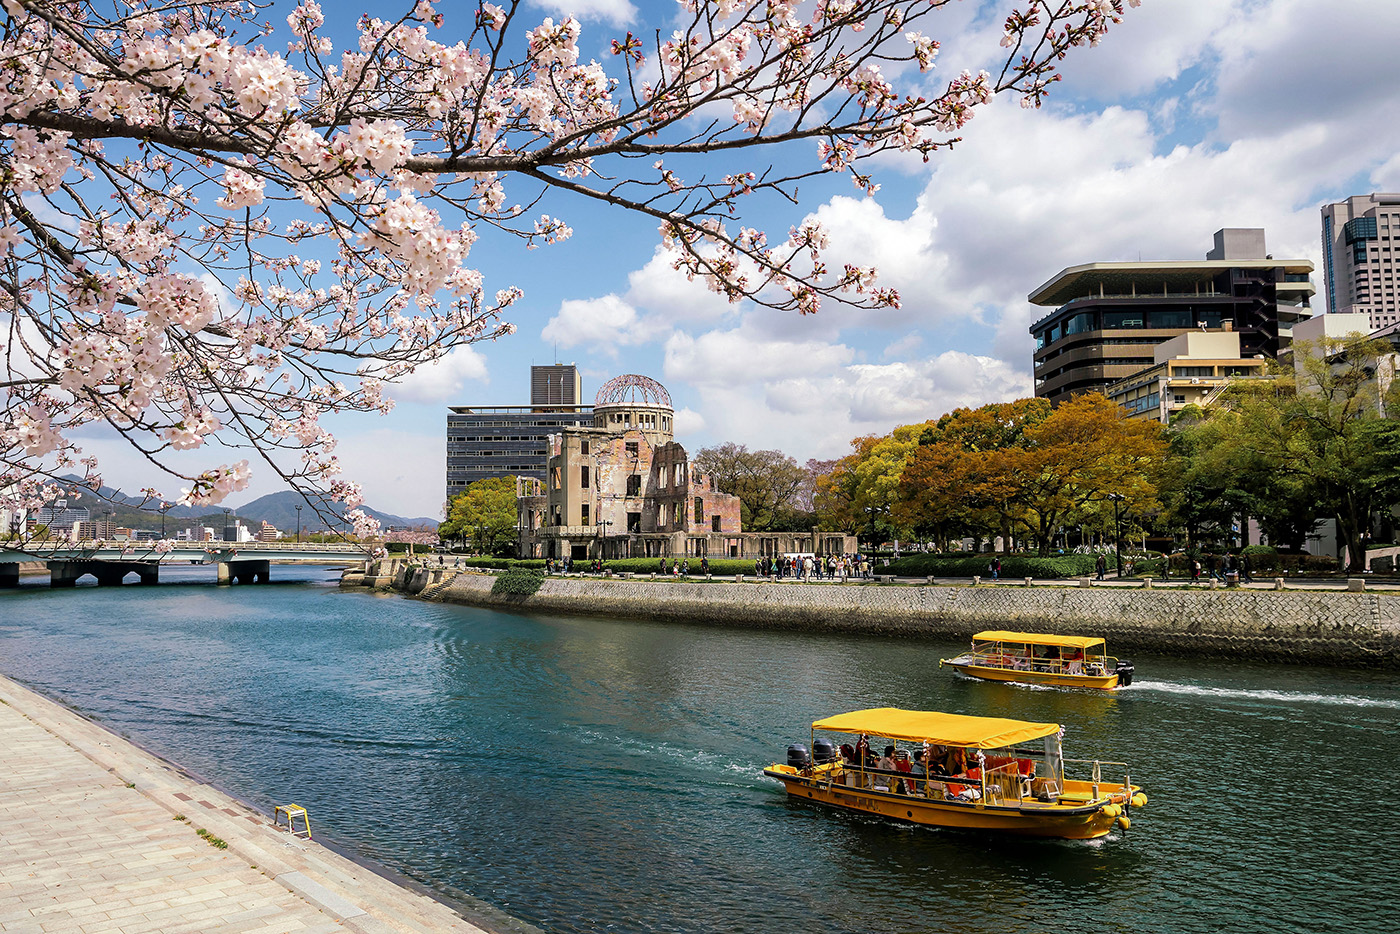 히로시마 원폭 돔 위로 흩날리는 고베의 벚꽃잎이 소박하면서도 감동적인 풍경을 연출한다